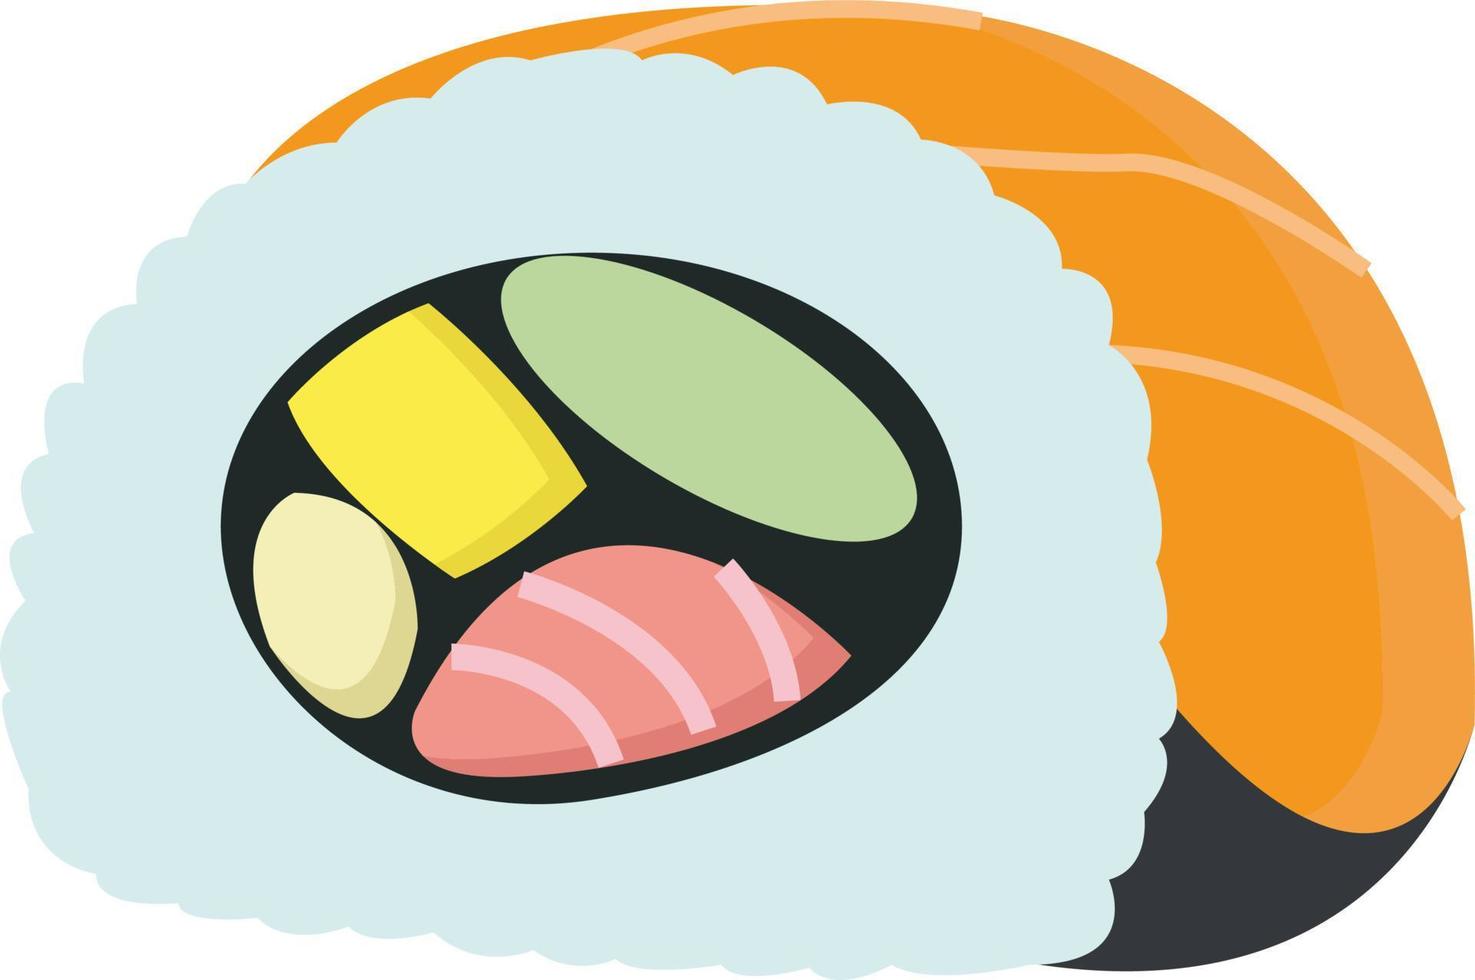 Sushi, illustration, vector on white background.